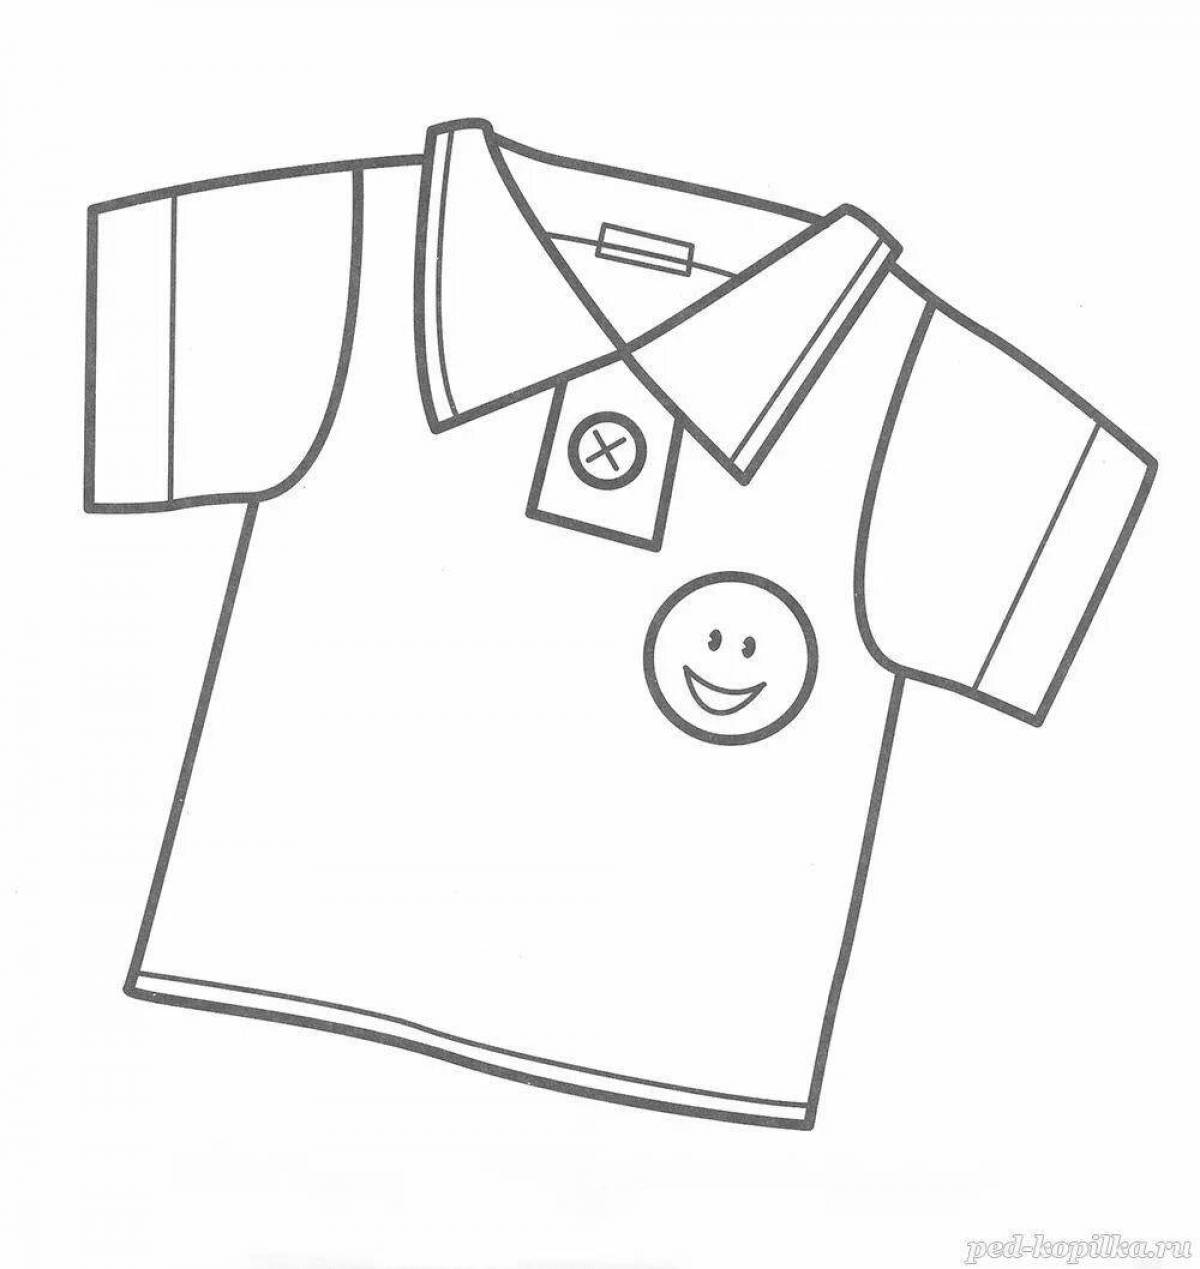 Игривая раскраска рубашки для детей 4-5 лет